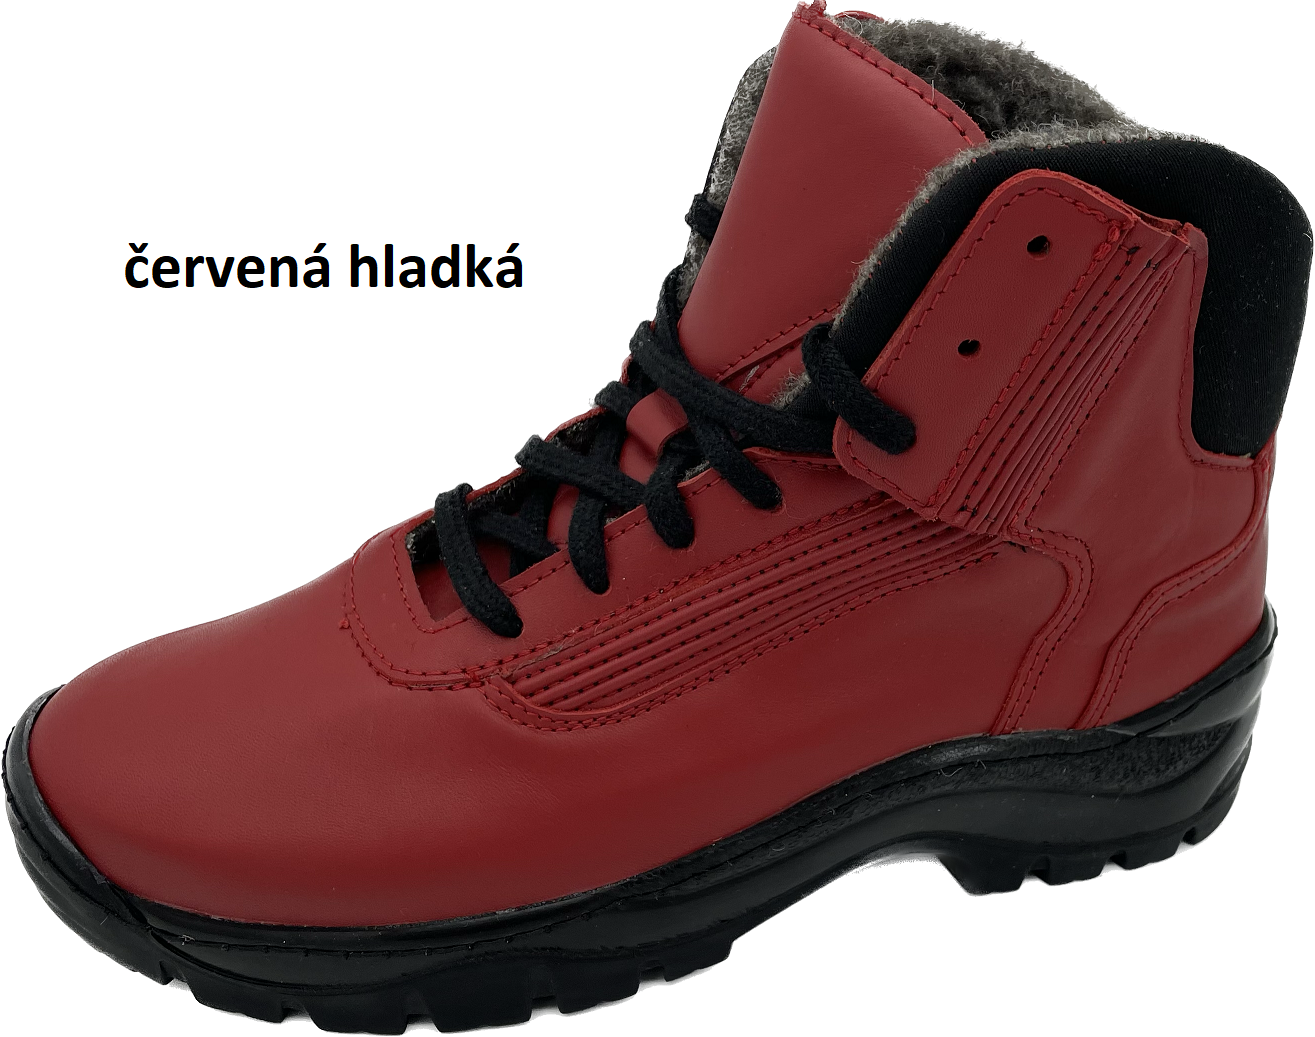 Boty Hanák TREKING Barva usně: červená hladká, Velikosti obuvi: 38